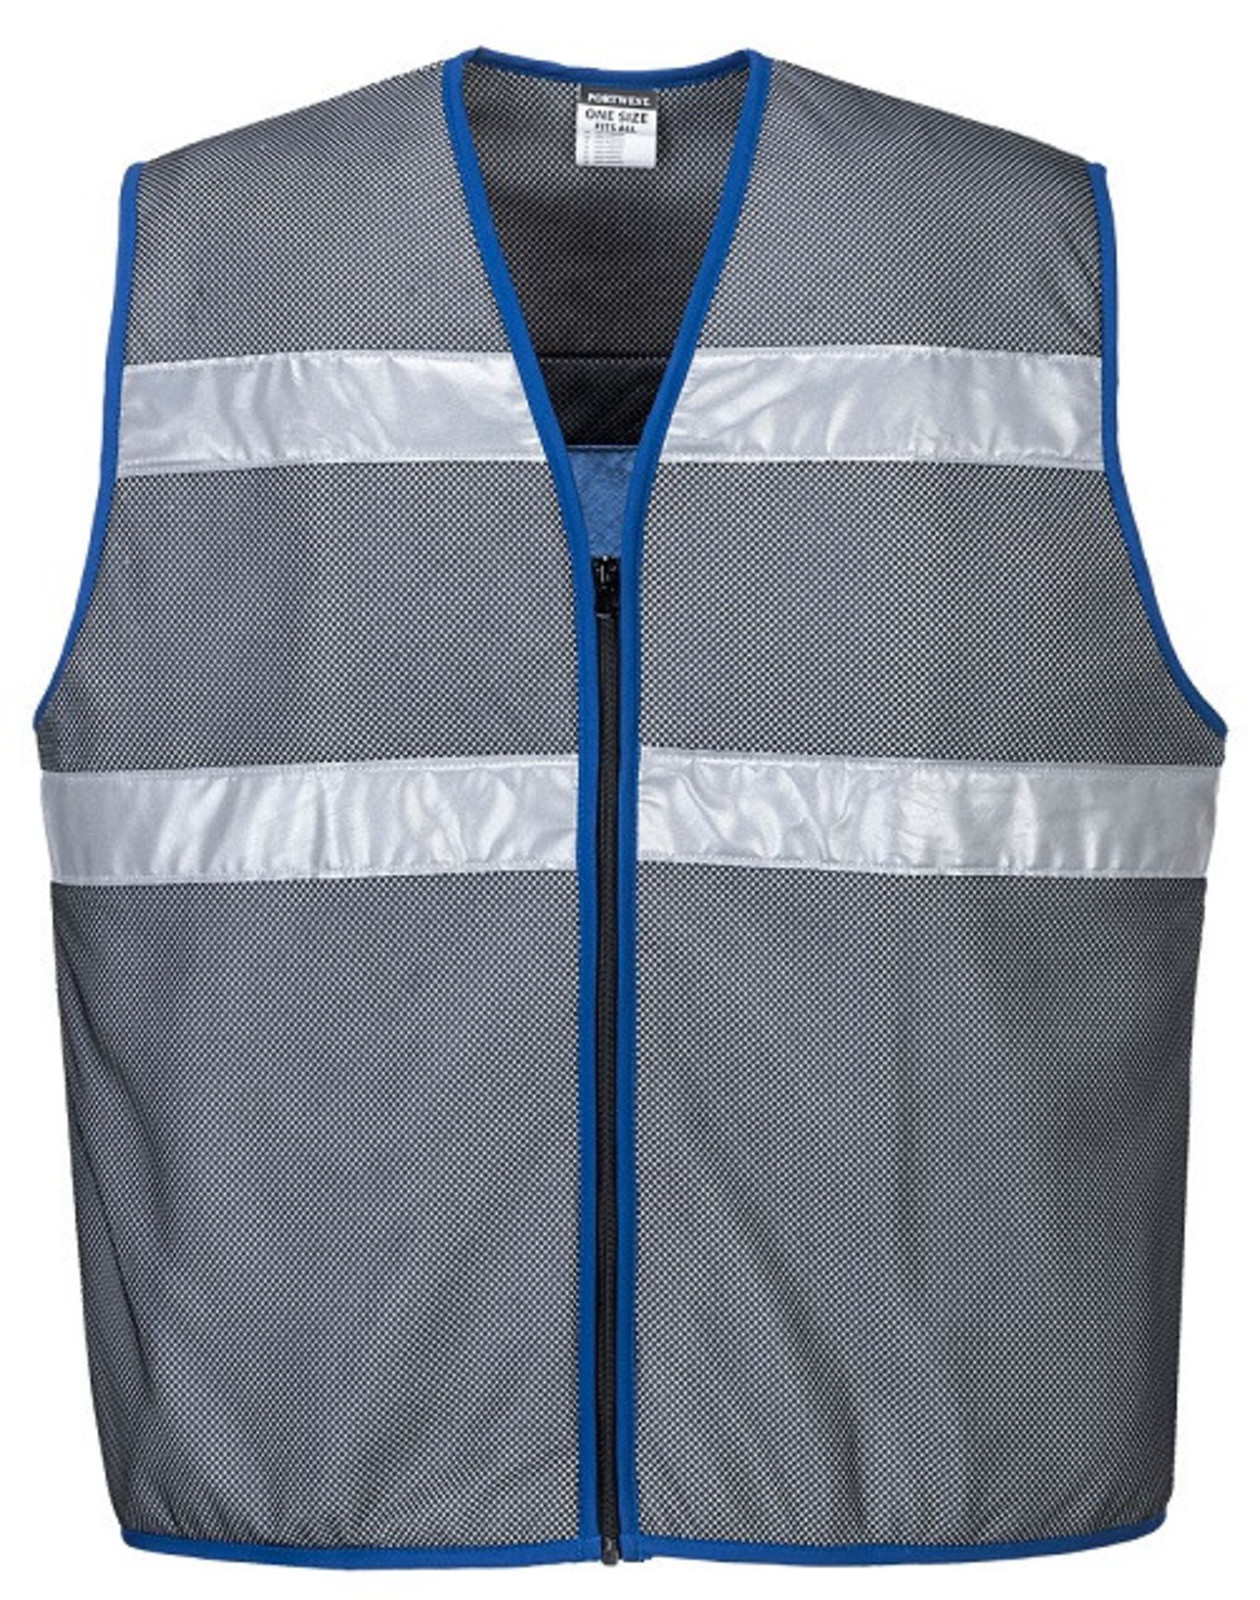 Chladiaca vesta s reflexnými pruhmi Portwest CV01  - veľkosť: XXL/XXXL, farba: sivá